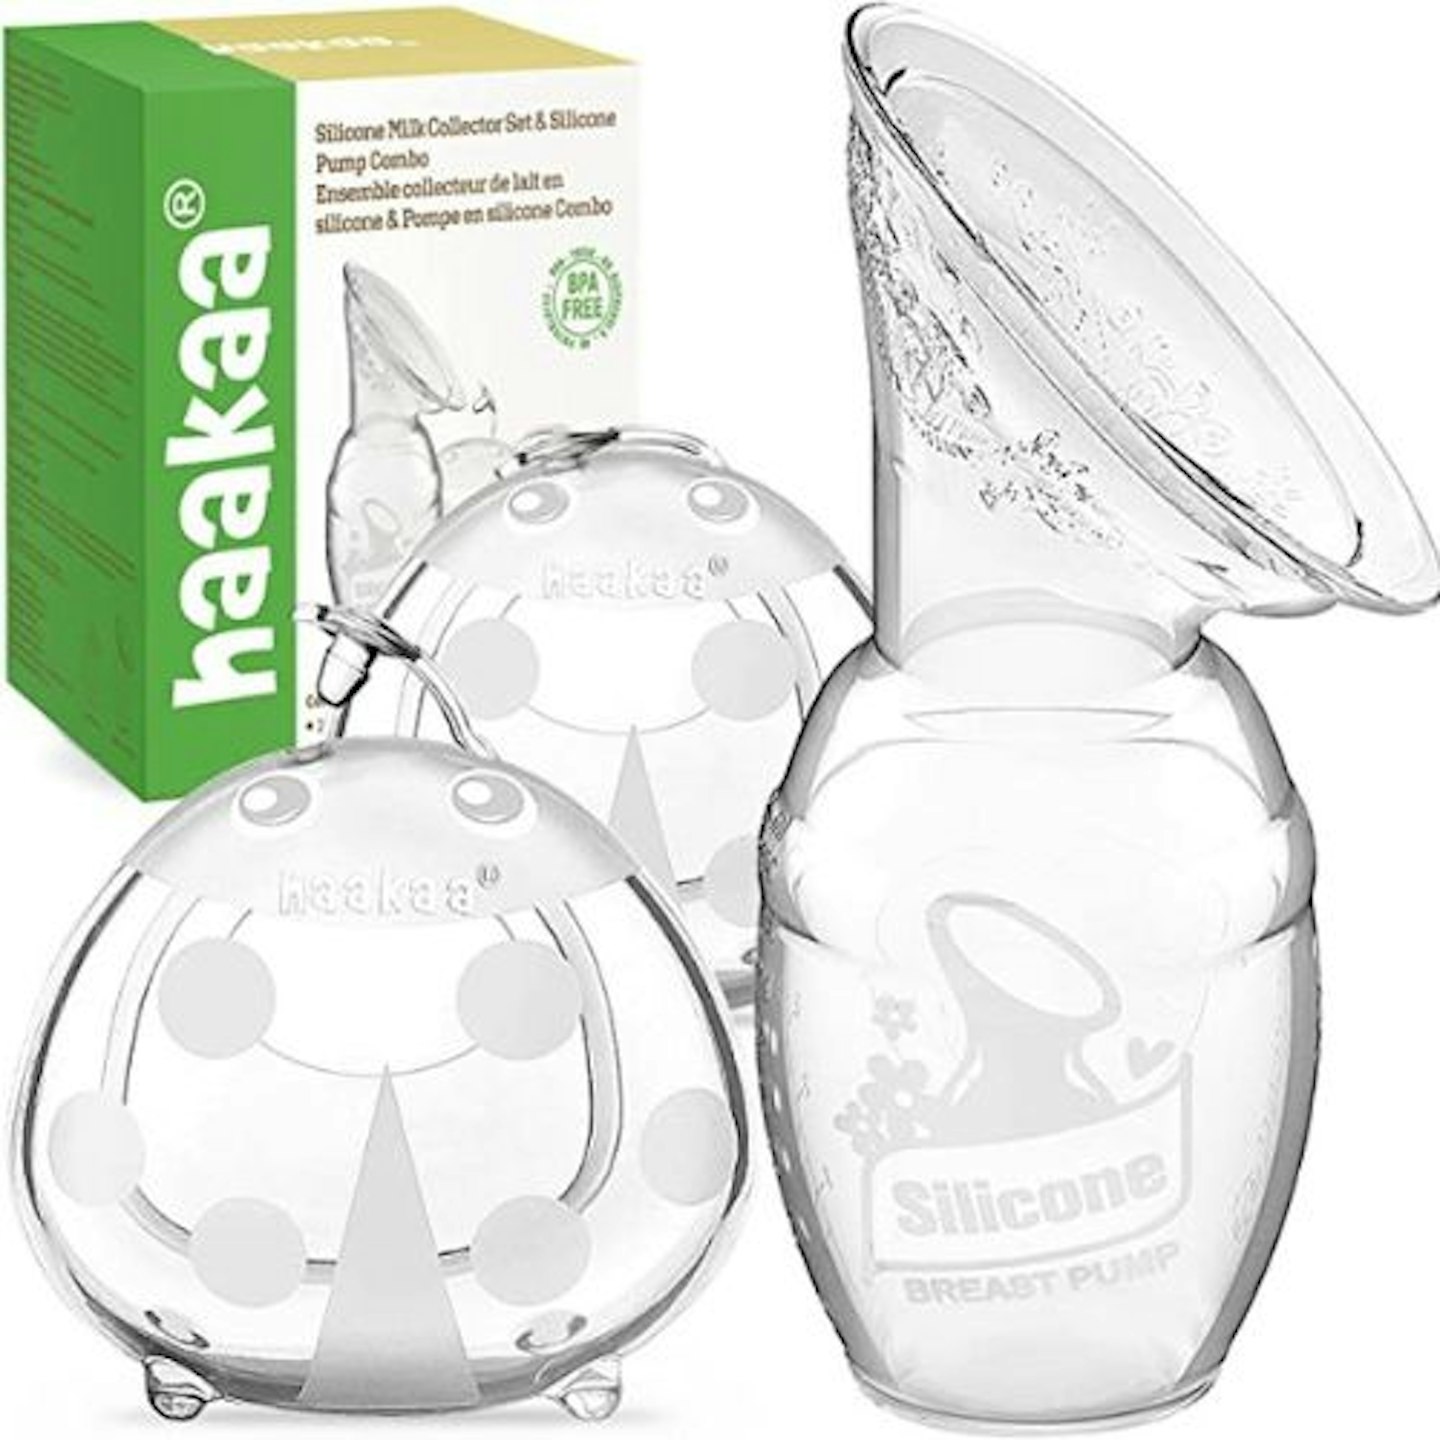 haakaa Manual Breast Pump & Ladybug Breast Milk Collector Combo